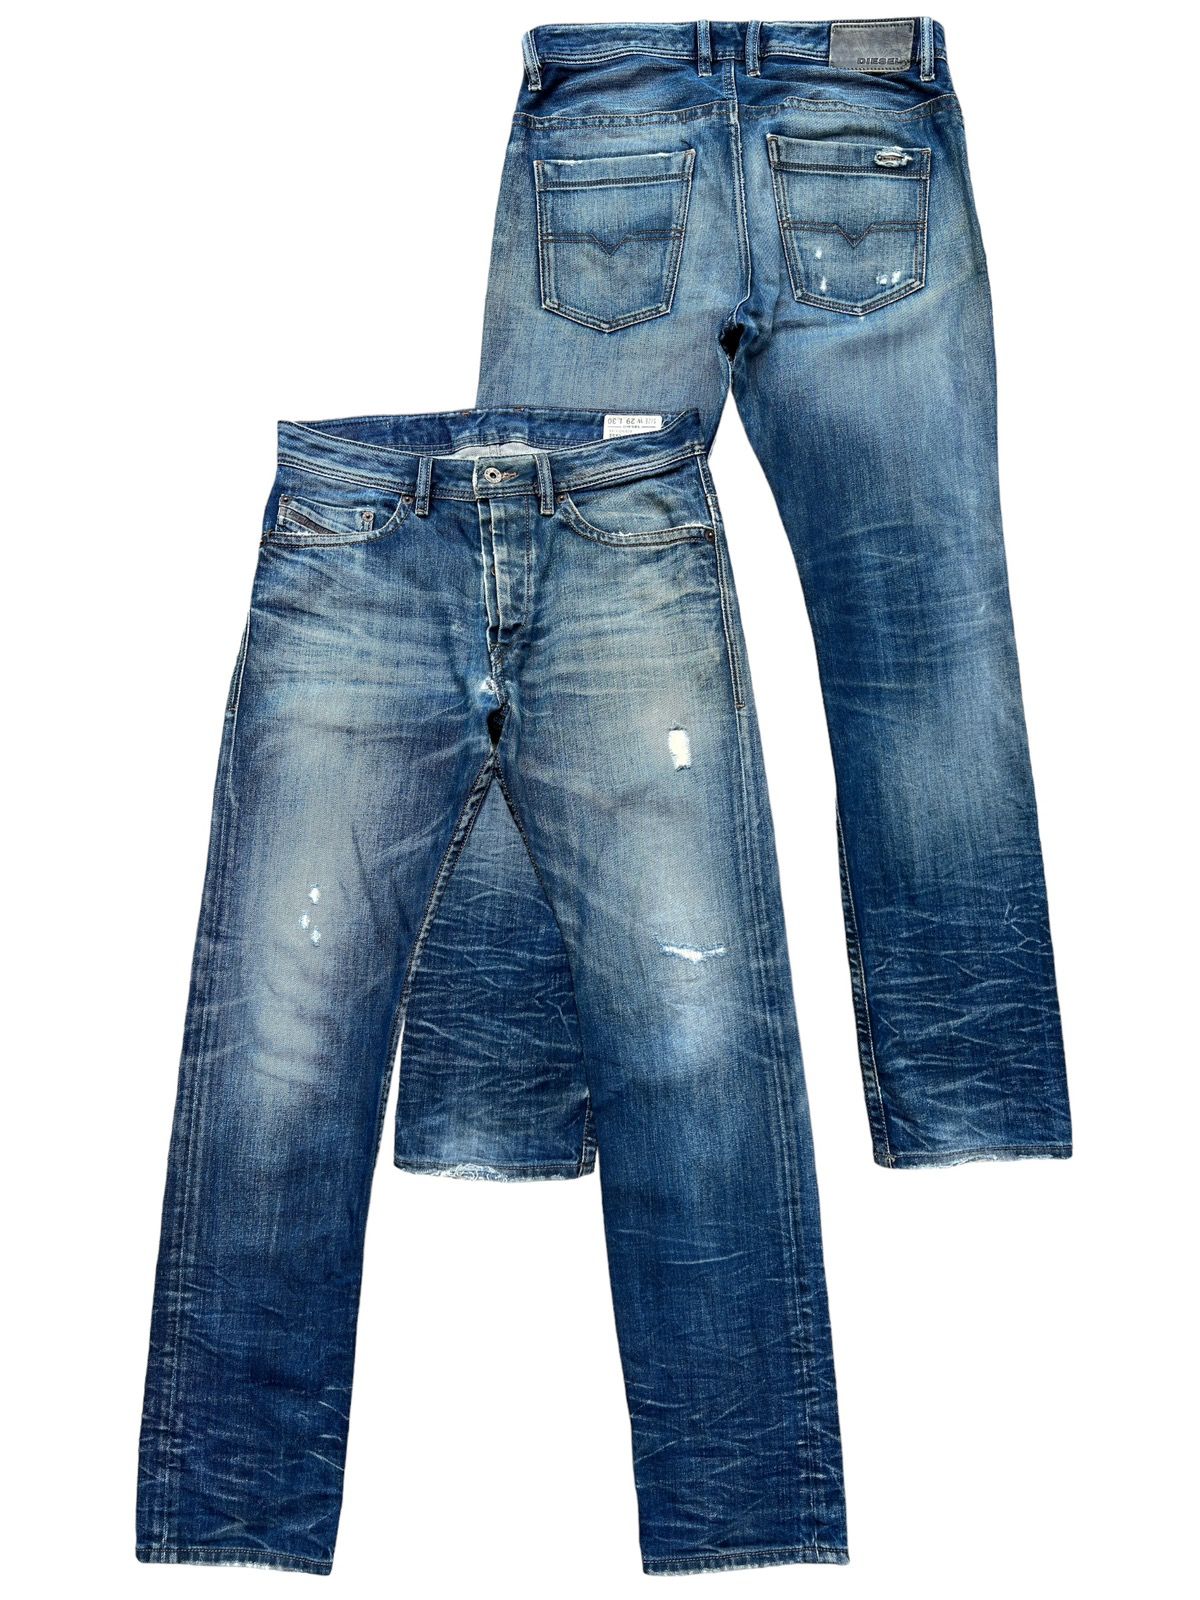 Vintage Diesel Industry Distressed Denim Jeans 32x31 - 1